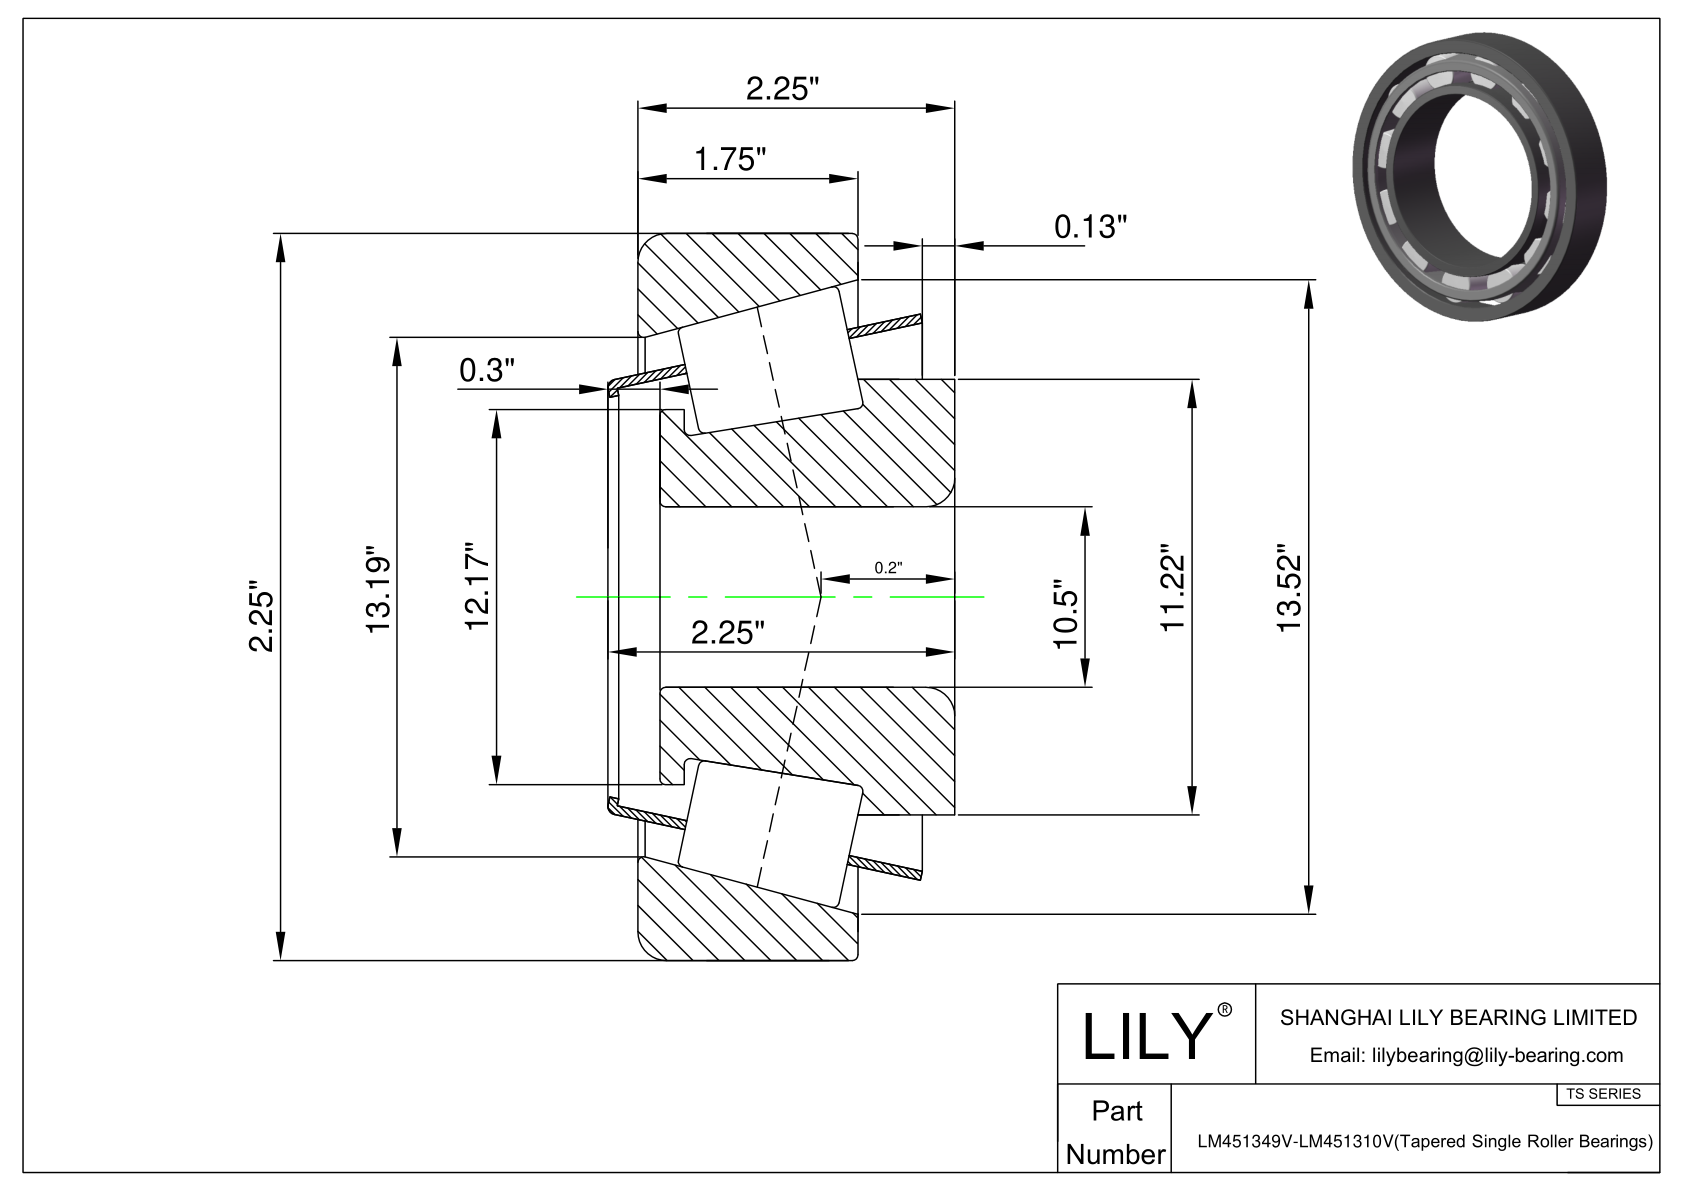 LM451349V-LM451310V TS系列(圆锥单滚子轴承)(英制) CAD图形